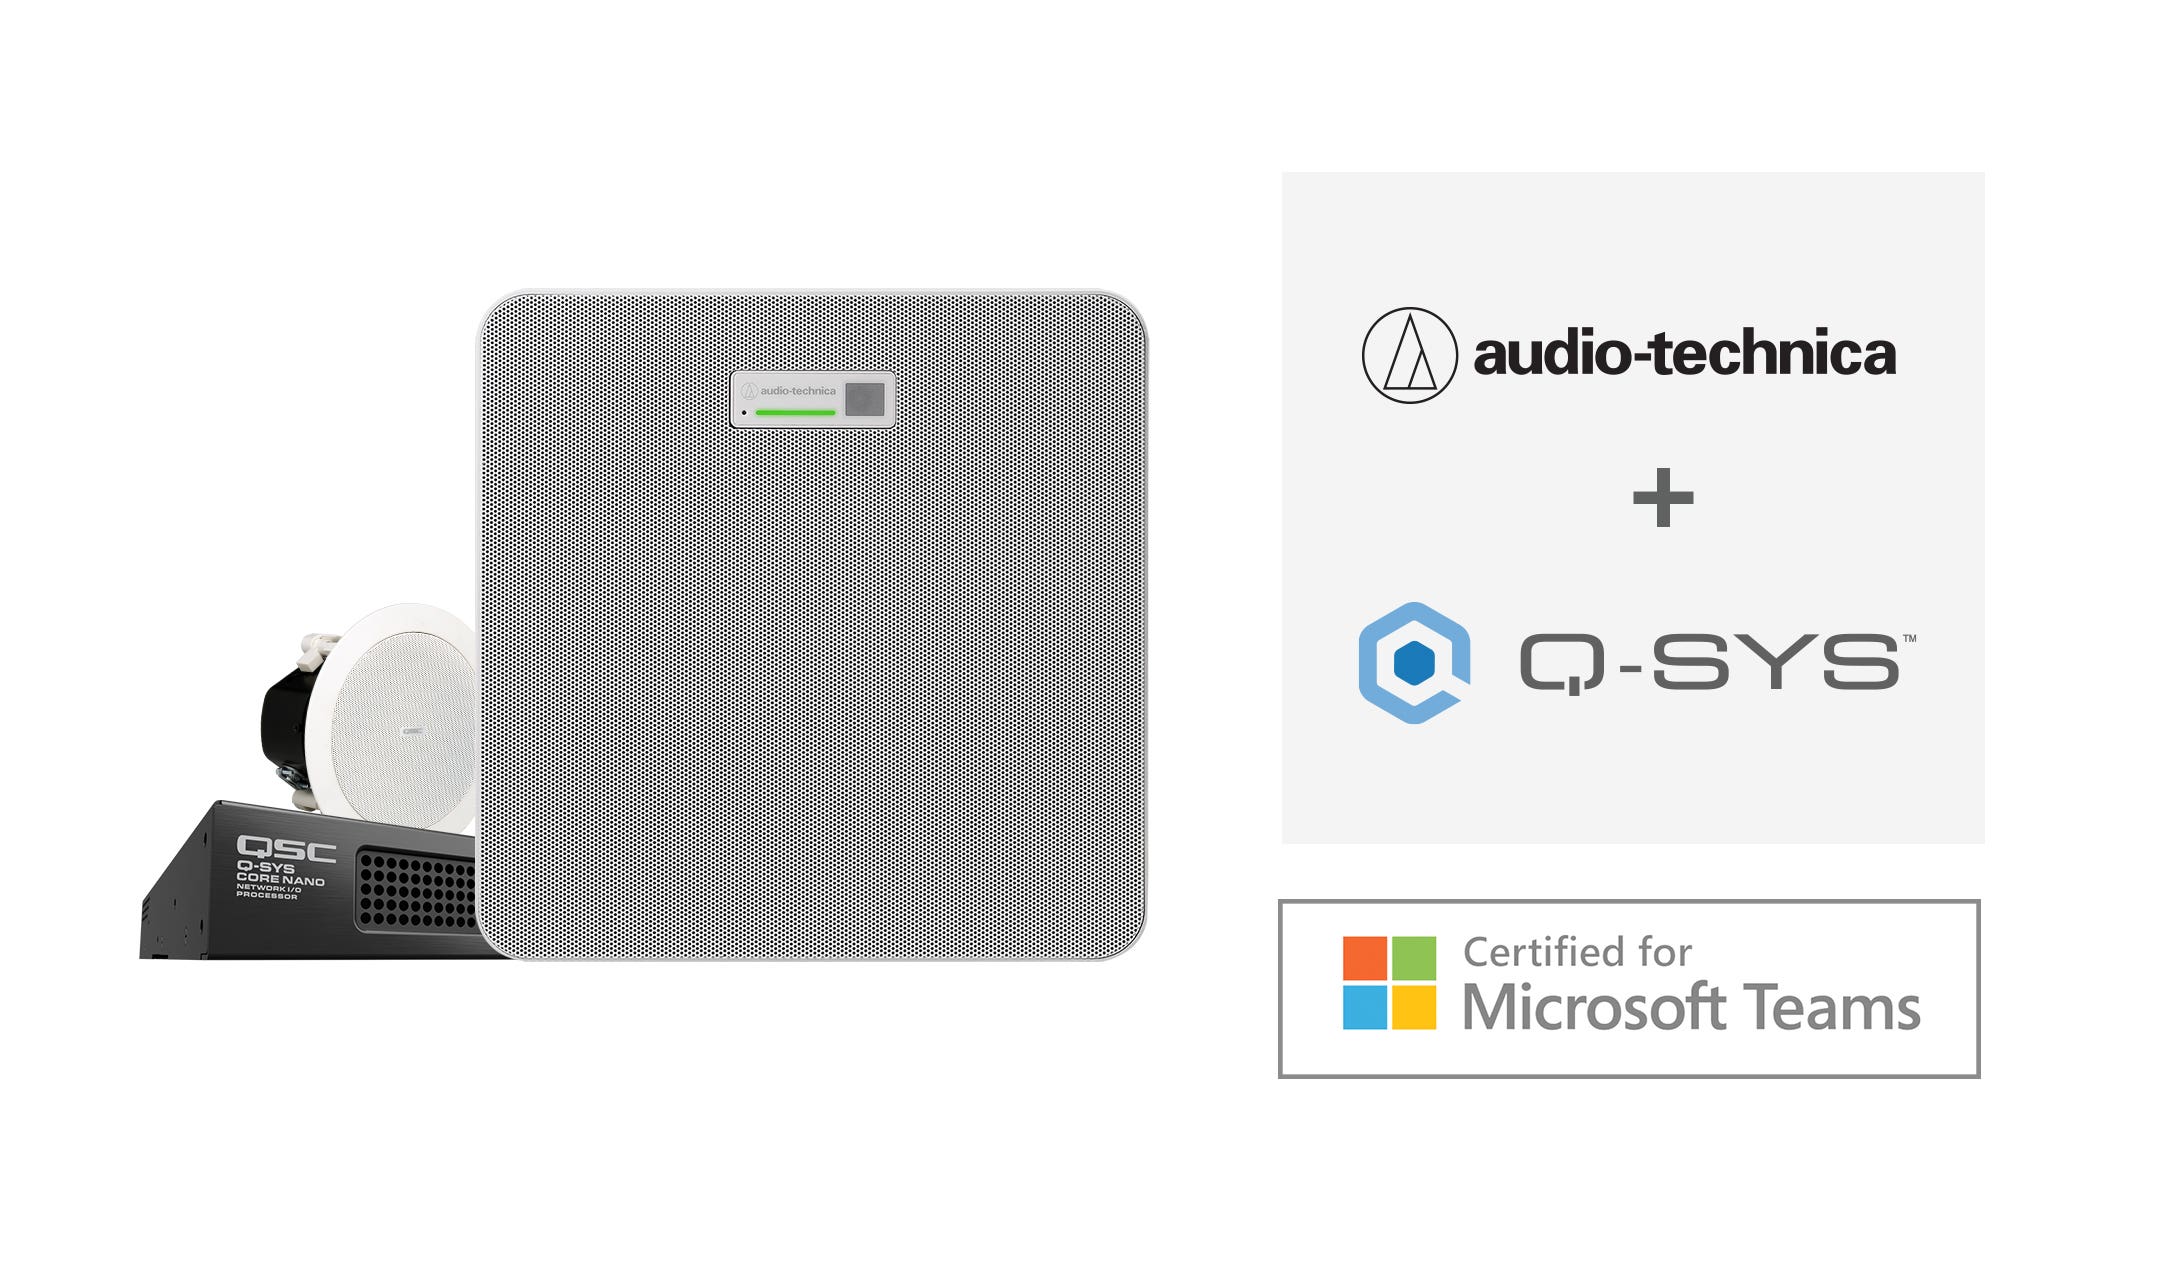 De Audio-Technica ATND1061DAN-plafondarraymicrofoon is voortaan gecertificeerd voor Microsoft Teams Rooms, als onderdeel van een Q-SYS-systeem